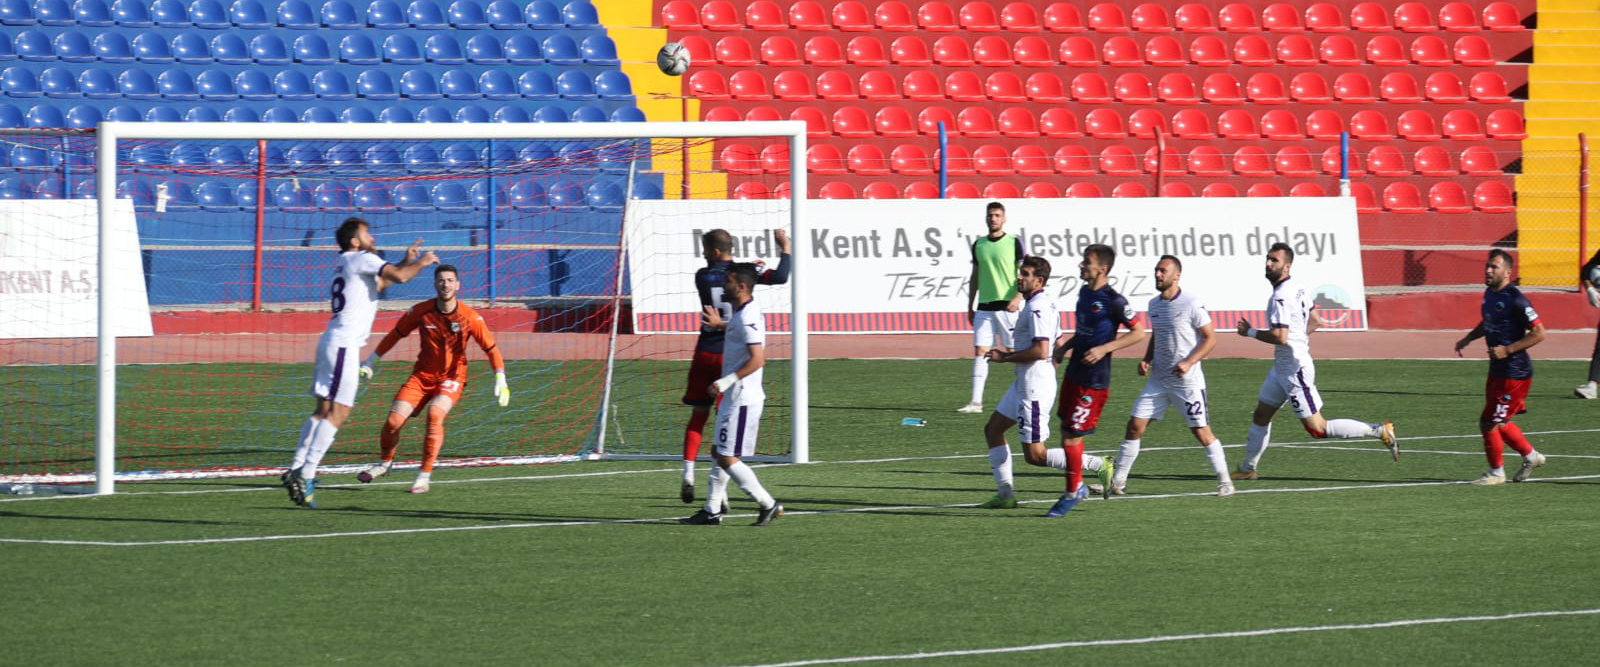 Mardin Spor 0-0 Ordu Spor: Mardin Spor’un net penaltısı verilmedi!